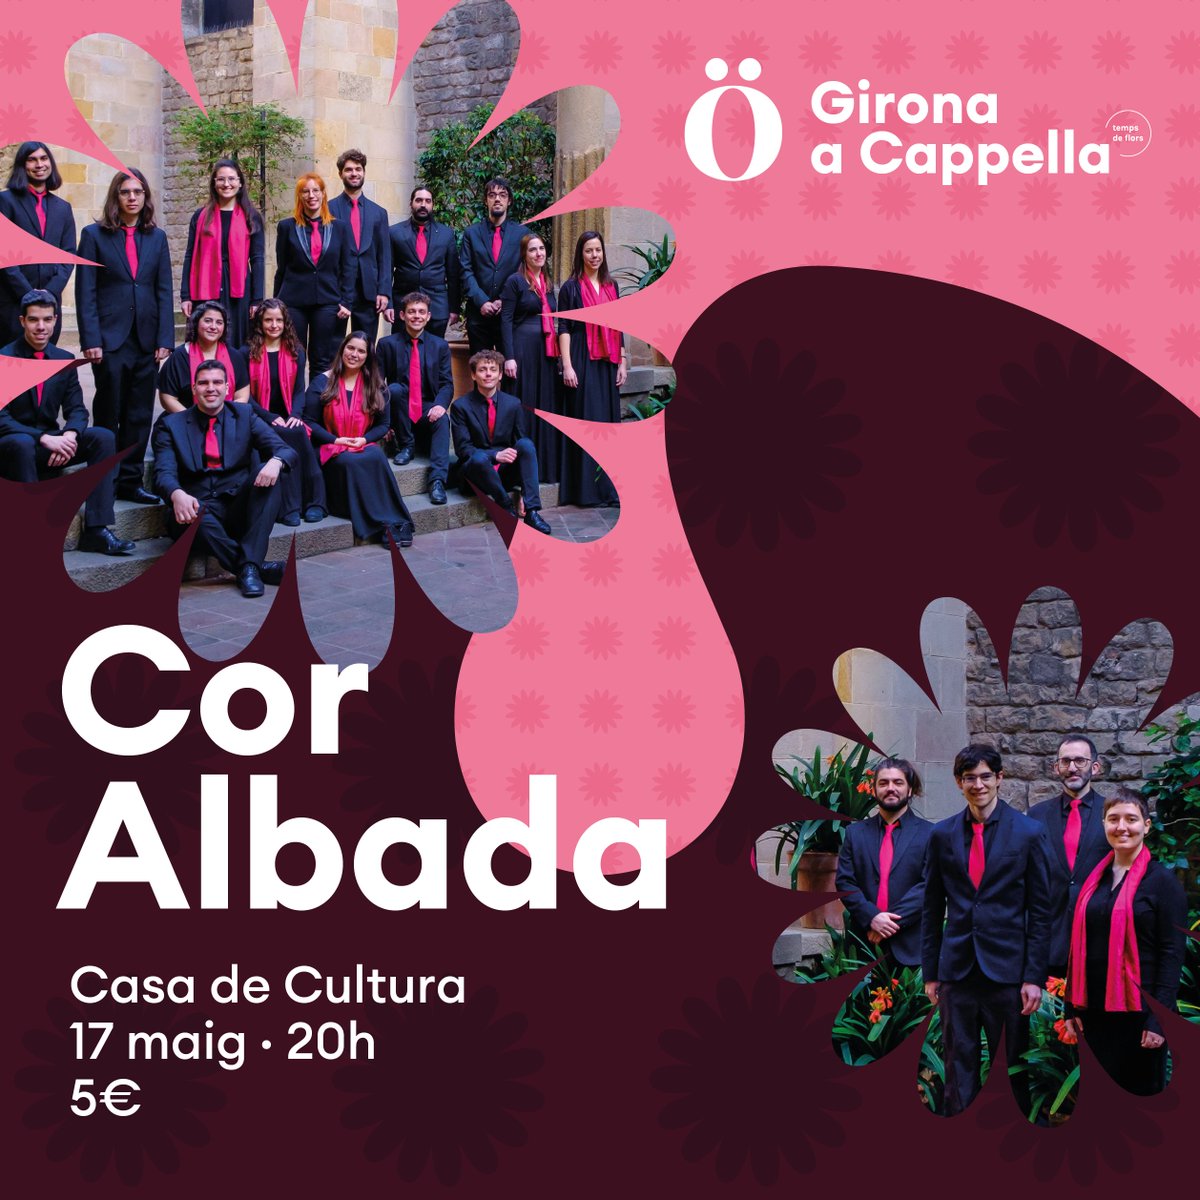 🌸El divendres 17 de maig @gironacappella porta a la Casa de Cultura el Cor Albada! Presentaran un conjunt d’arranjaments corals de cançó popular recents (alguns dels quals inèdits) i d’altres que ja han esdevingut grans clàssics del cant coral. 🎟️ tuit.cat/nTY3s